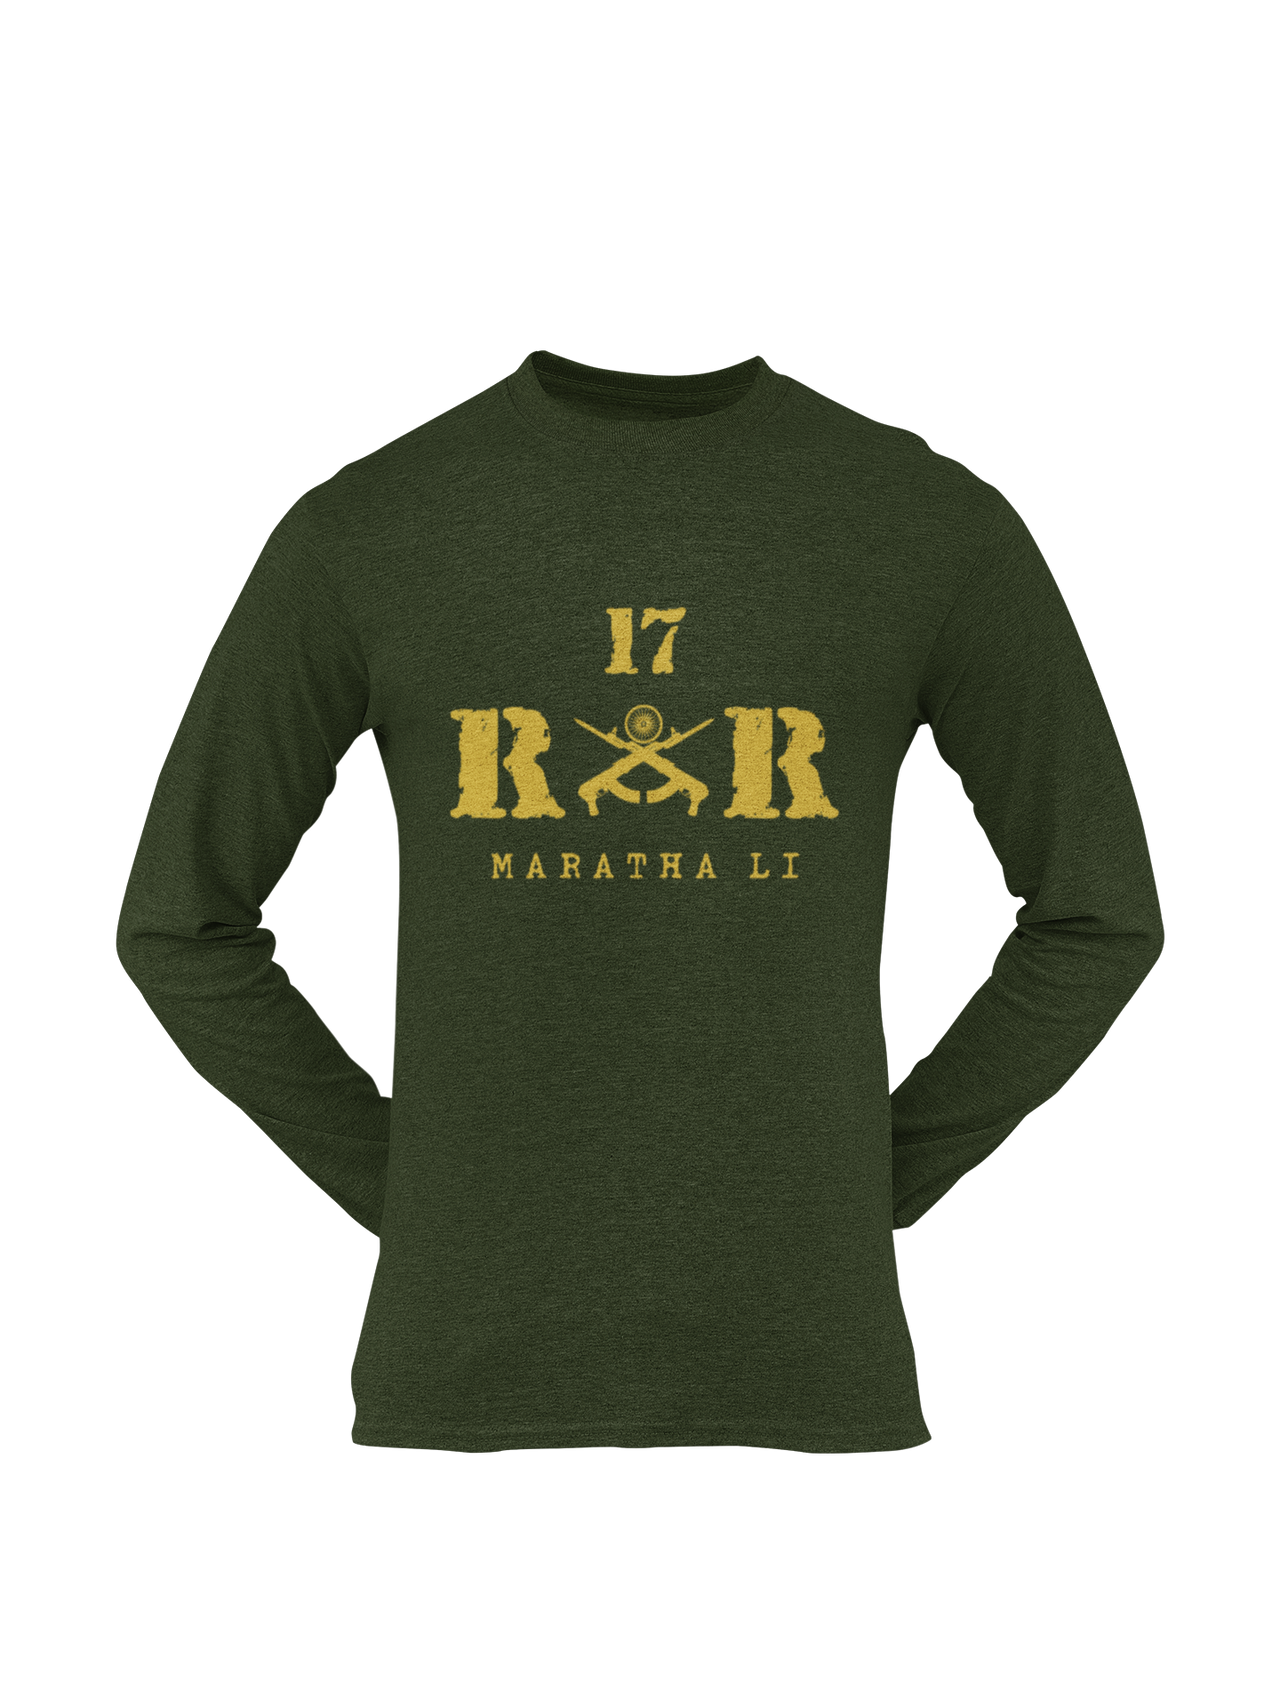 Rashtriya Rifles T-shirt - 17 RR Maratha Li (Men)